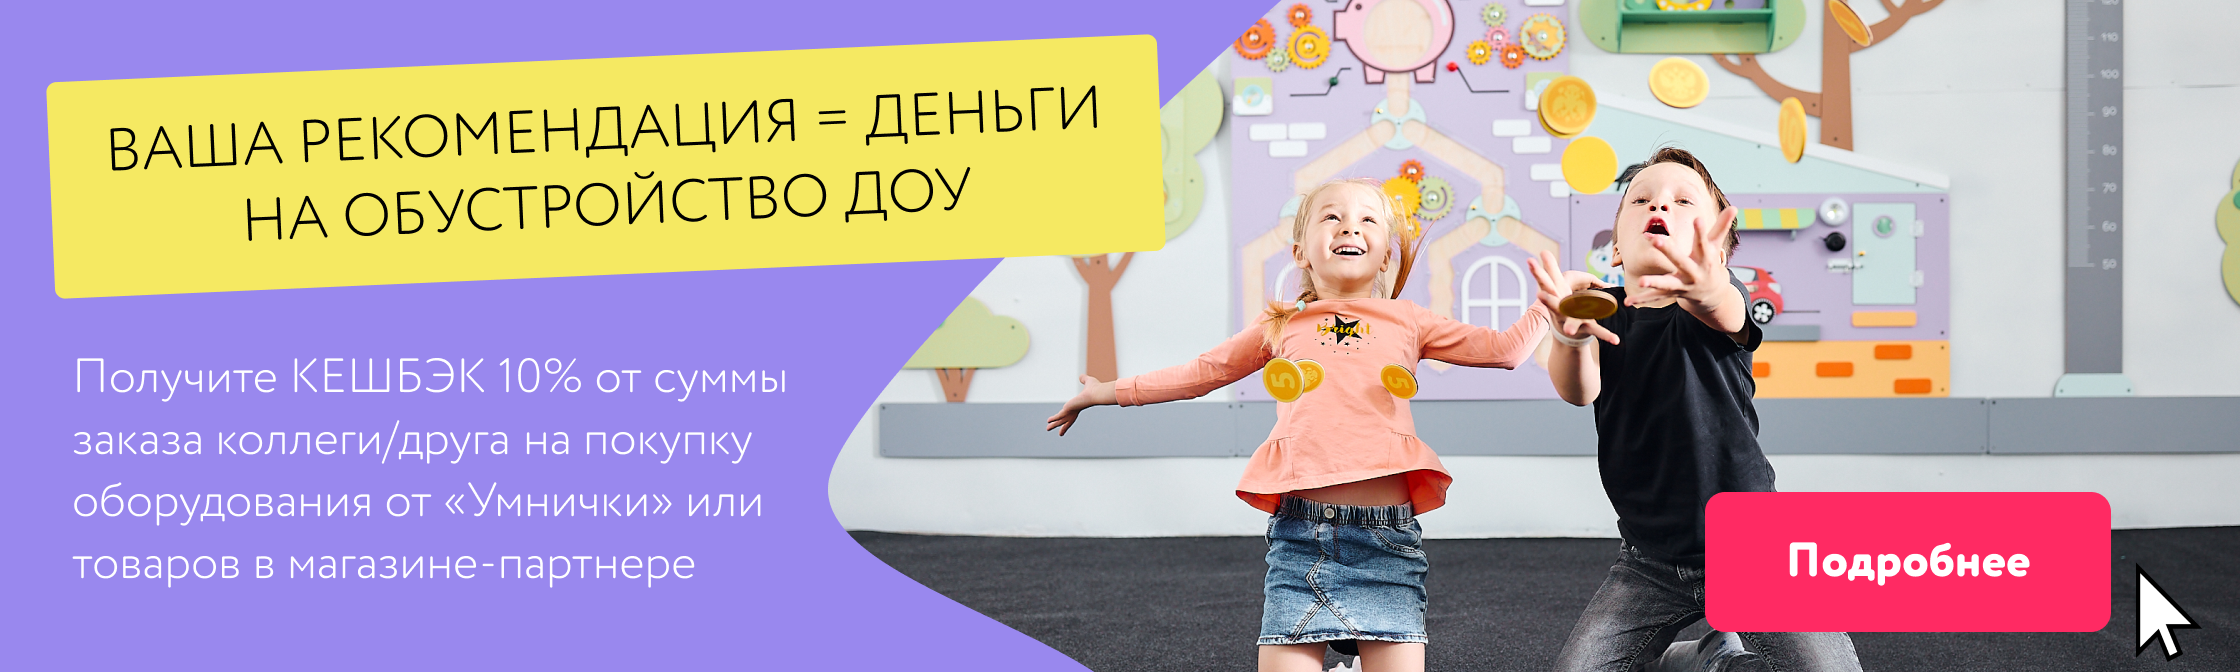 Настольные игры - купить настольную игру в Украине - интернет магазин настольных игр Настолкино